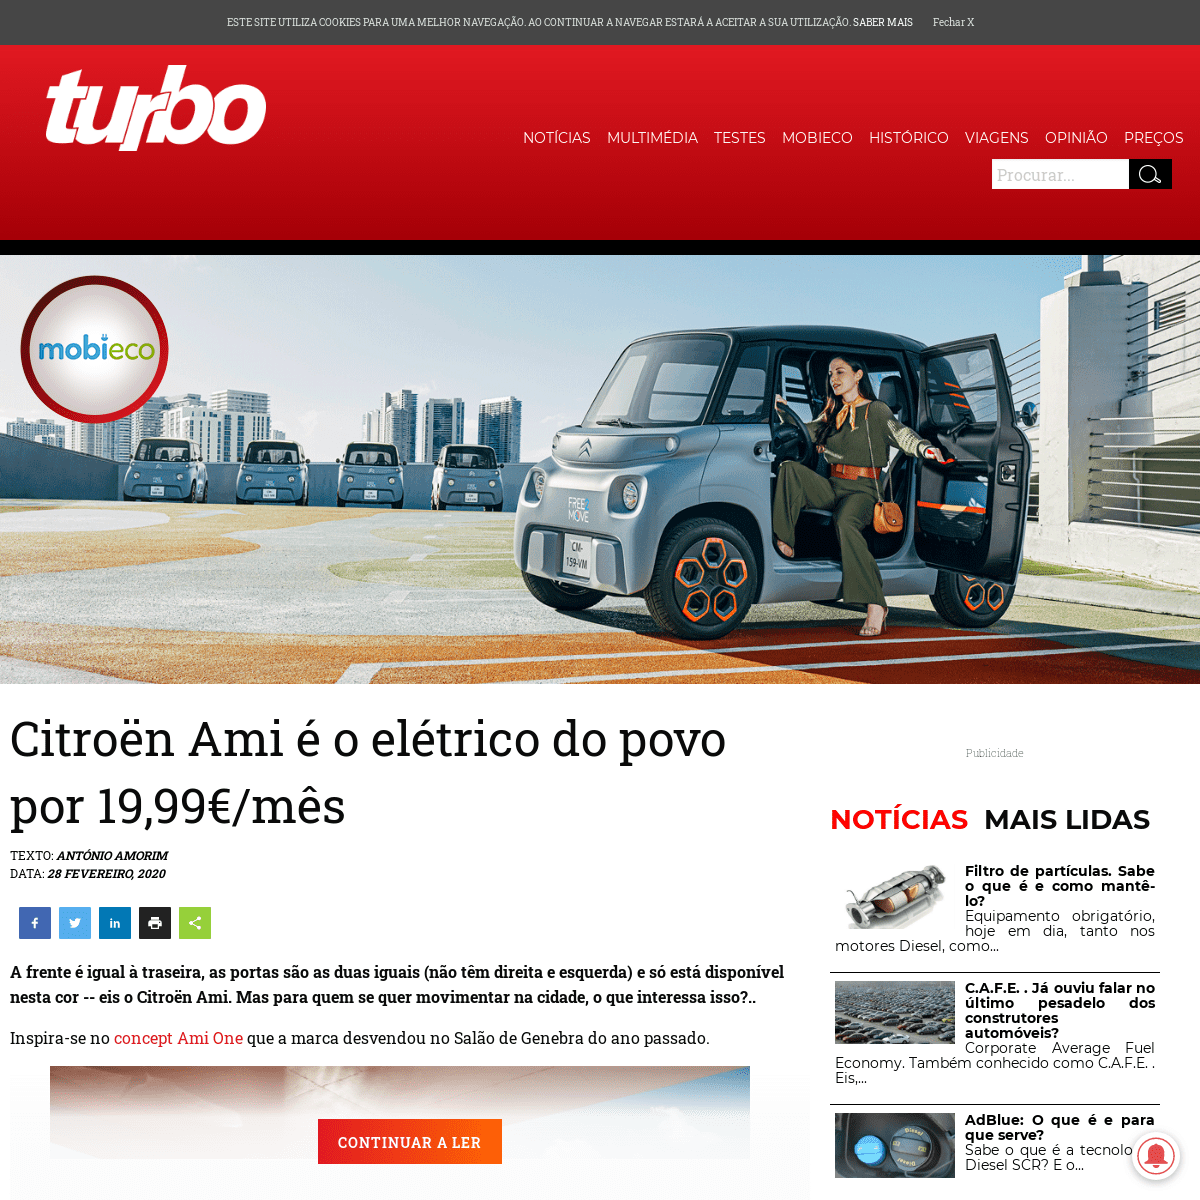 A complete backup of www.turbo.pt/citroen-ami-e-o-eletrico-do-povo-por-1999e-mes/